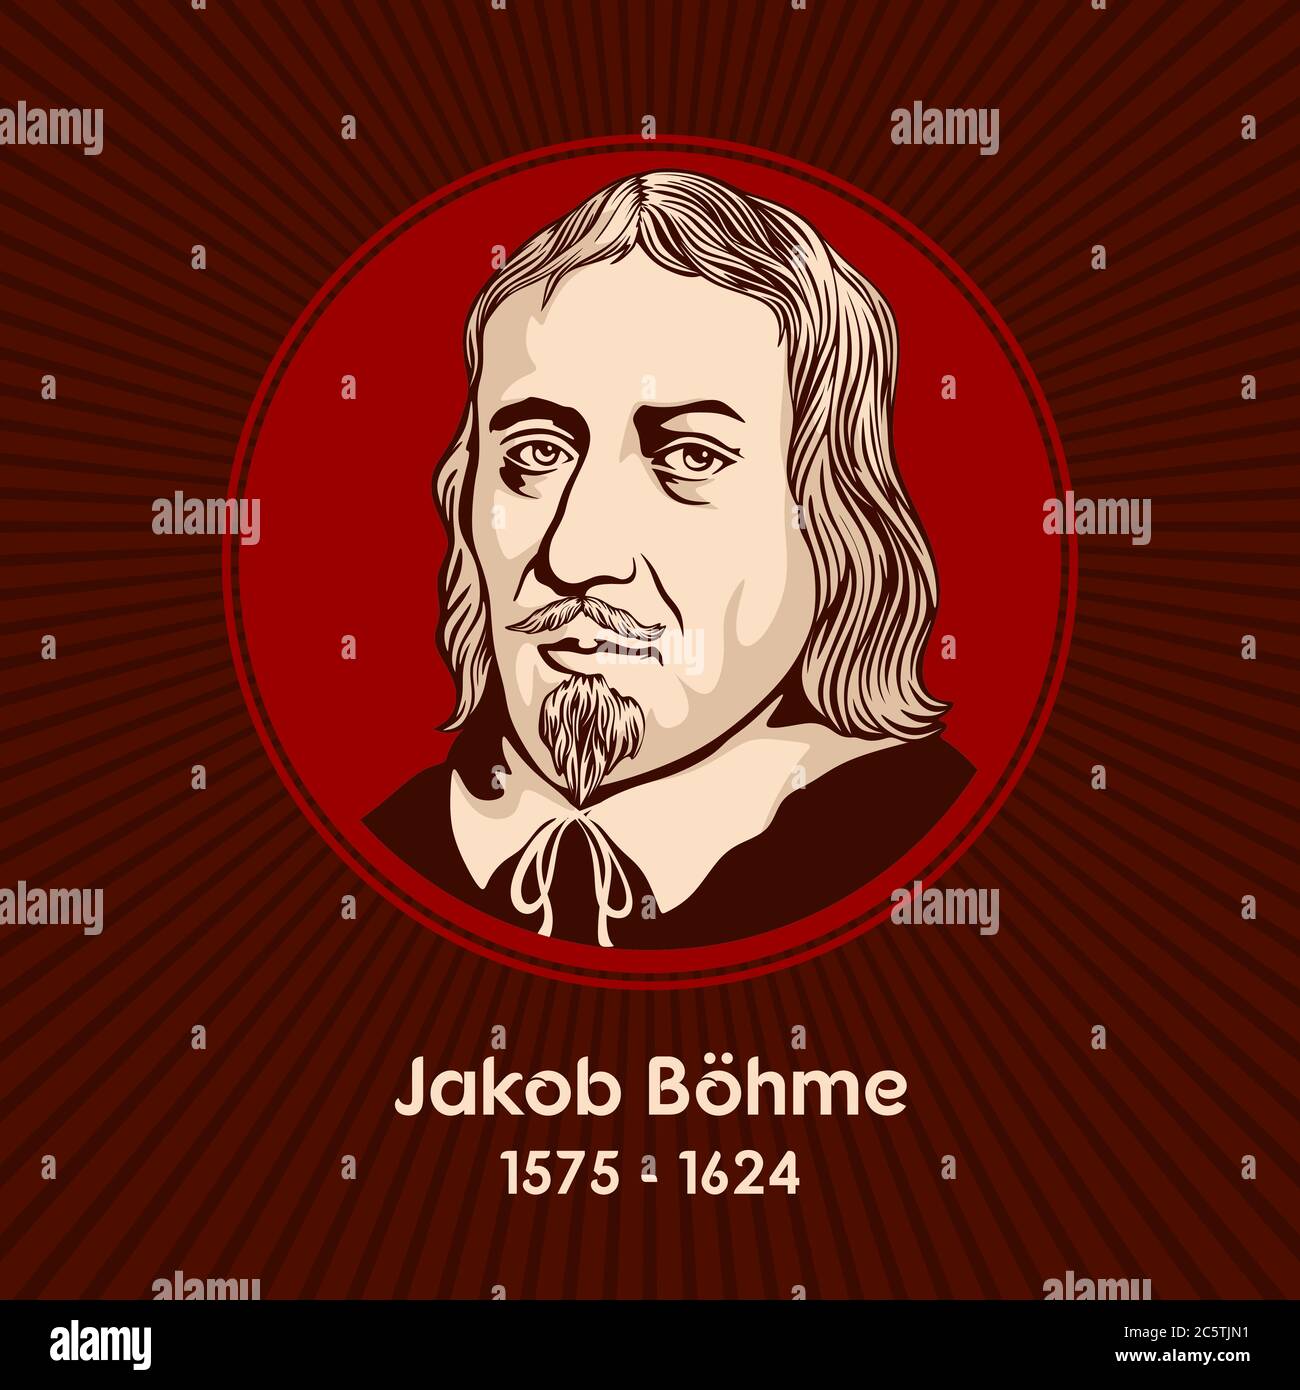 Jakob Bohme (1575 - 1624) war ein deutscher Philosoph, christlicher Mystiker und evangelischer Theologe. Stock Vektor